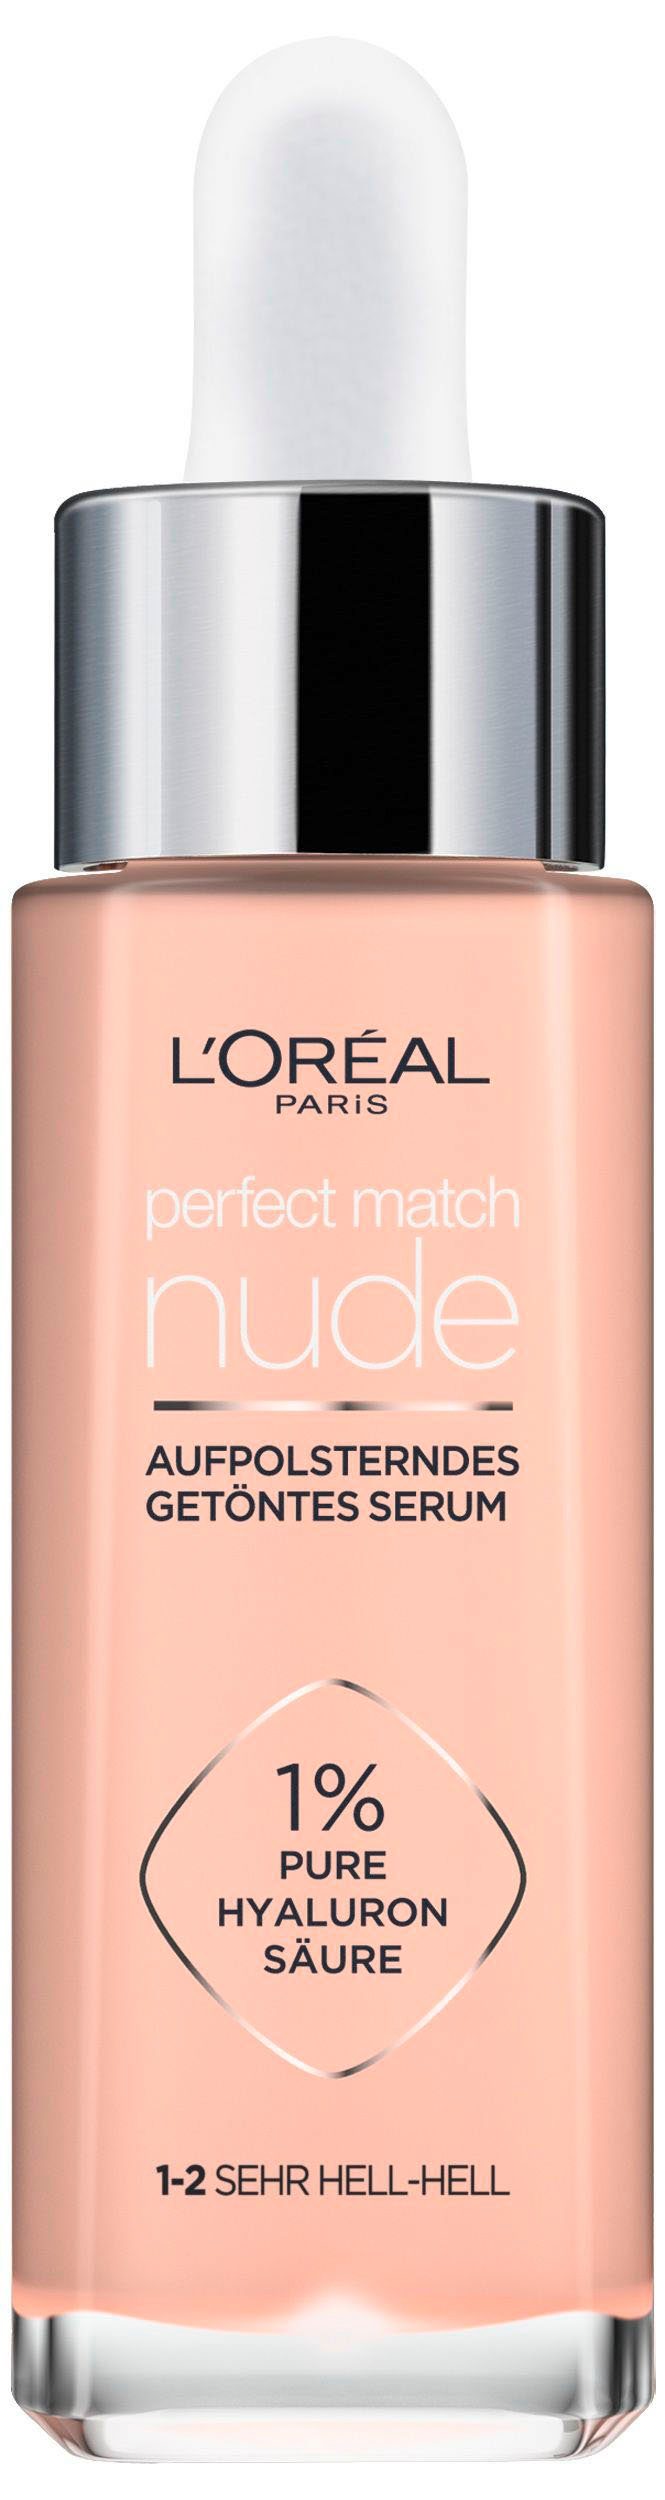 mit L'Oréal Match Hyaloron Serum, Paris Perfect L'ORÉAL Getöntes PARIS Gesichtsserum